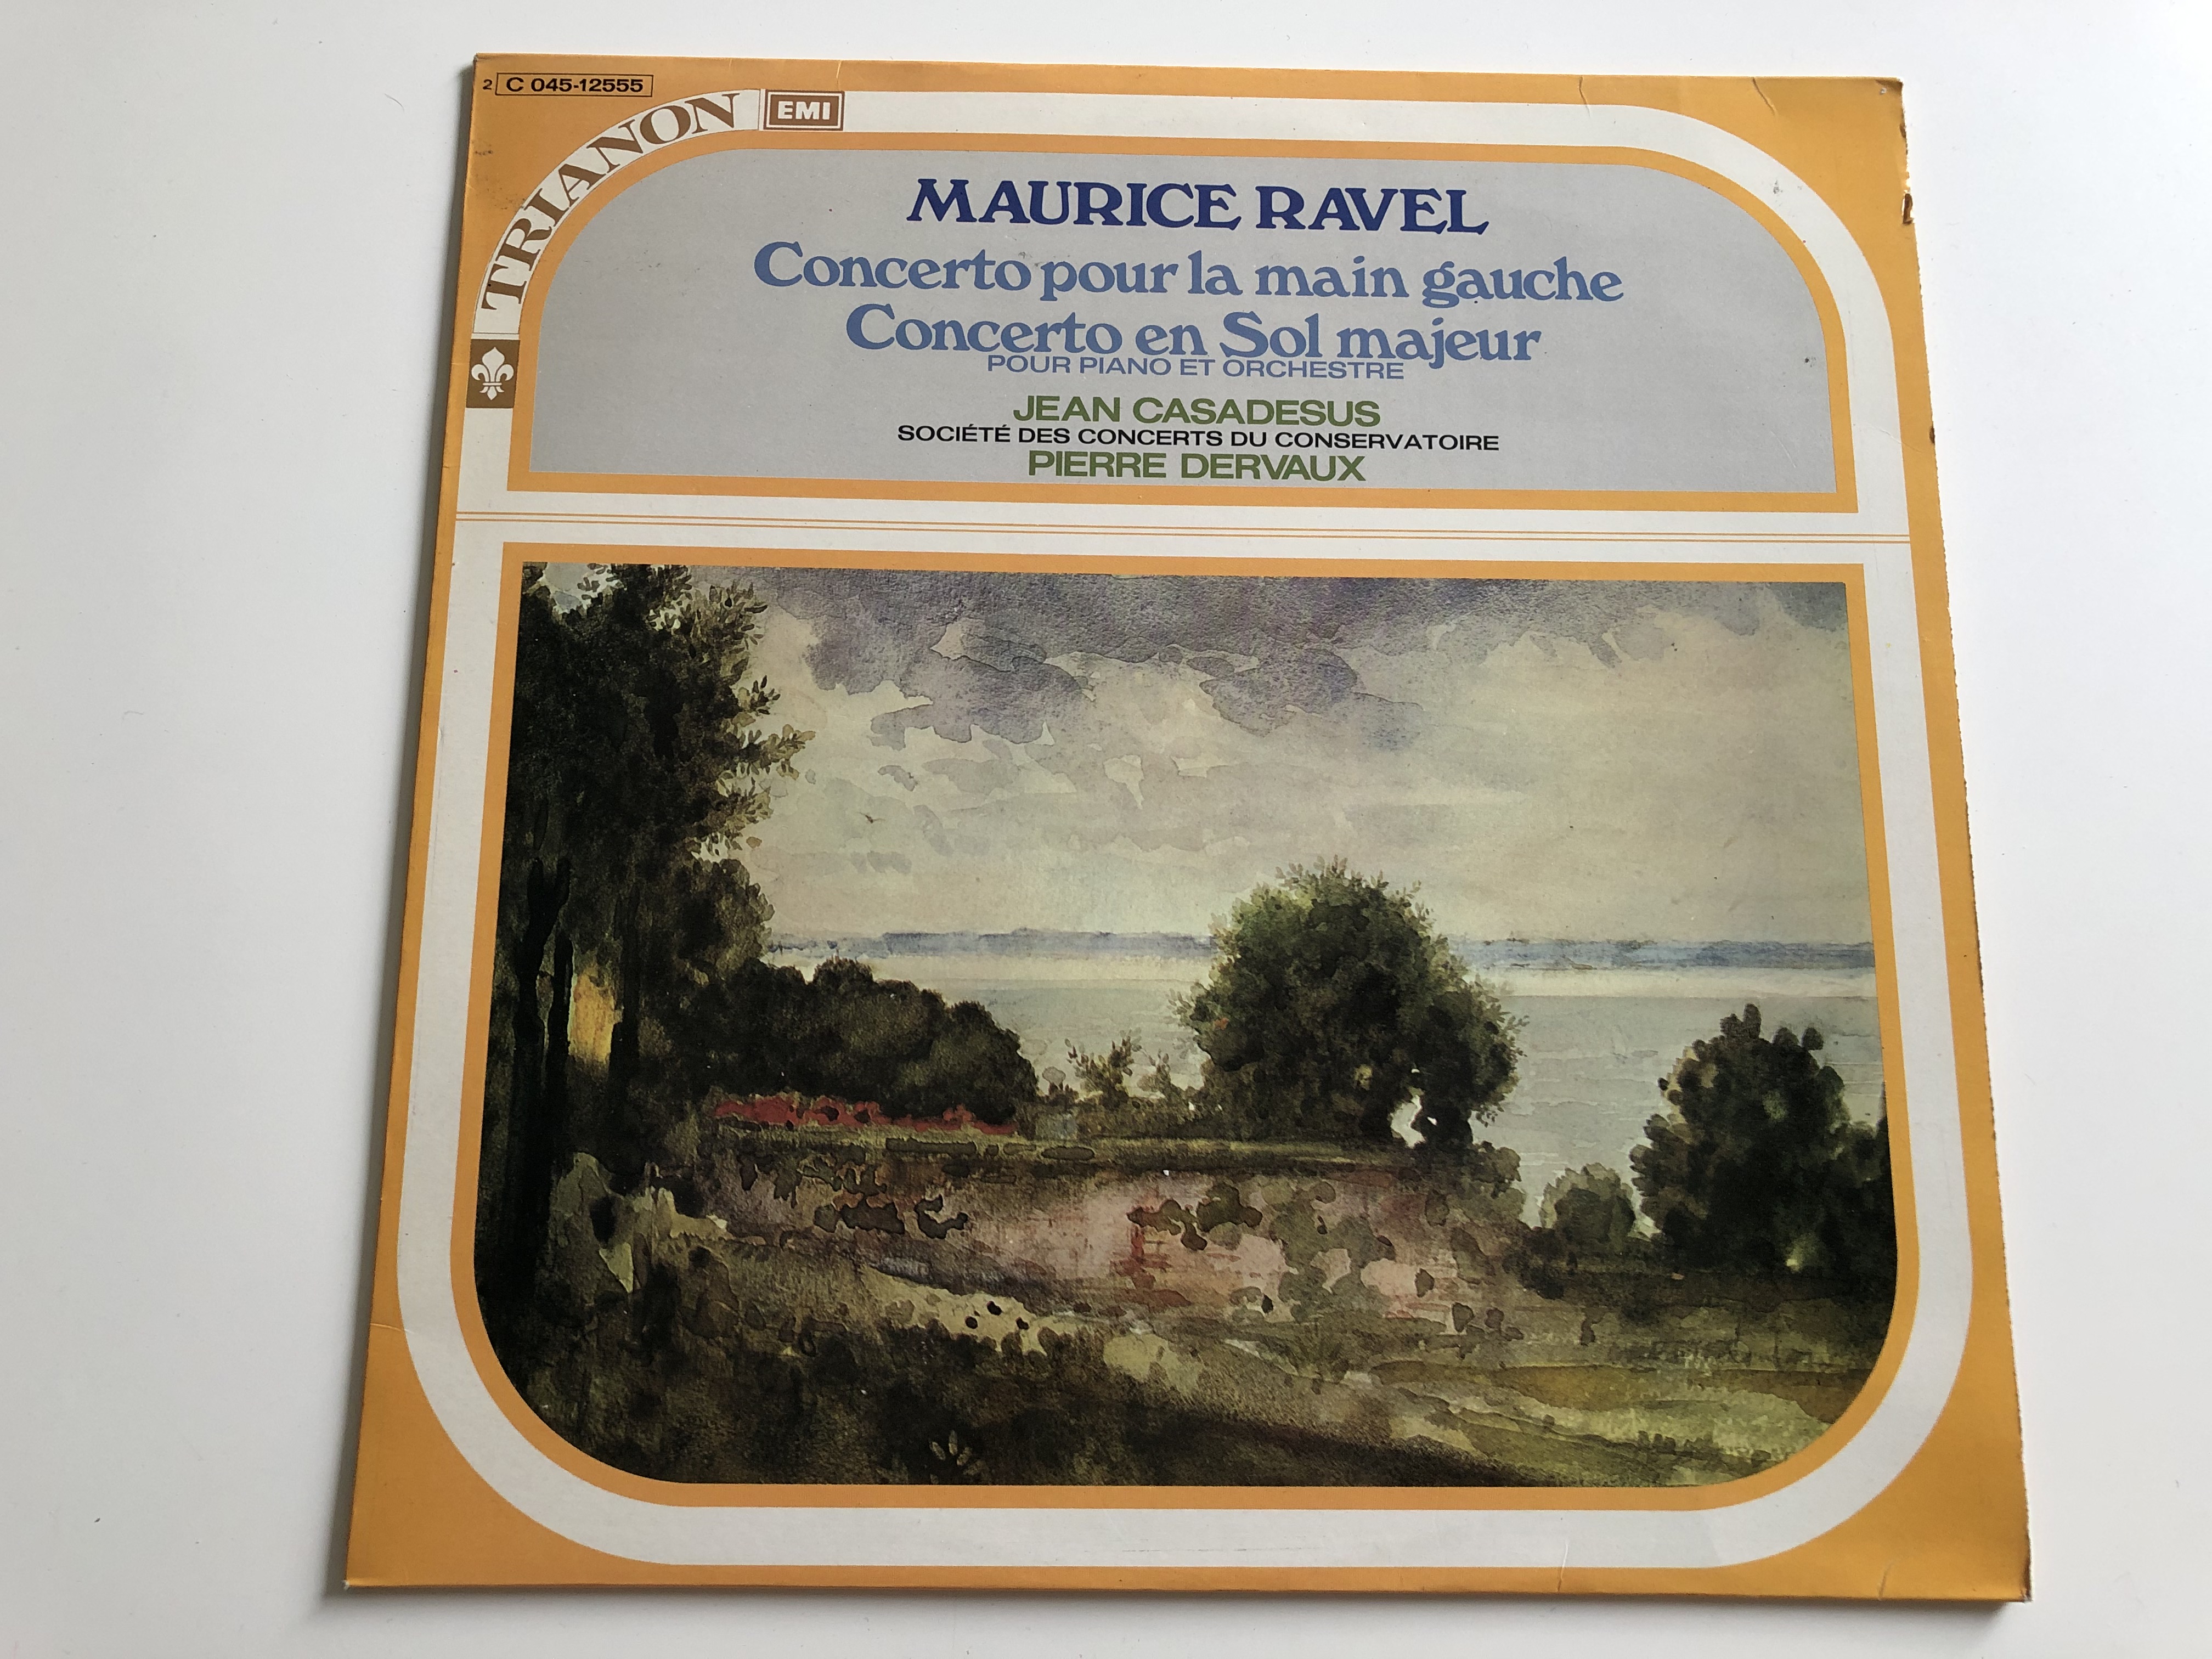 Maurice Ravel - Concerto Pour La Main Gauche / Concerto En Sol Majeur /  Jean Casadeus, Pierre Dervaux / TRIANON LP / C 045 - 12555 -  bibleinmylanguage